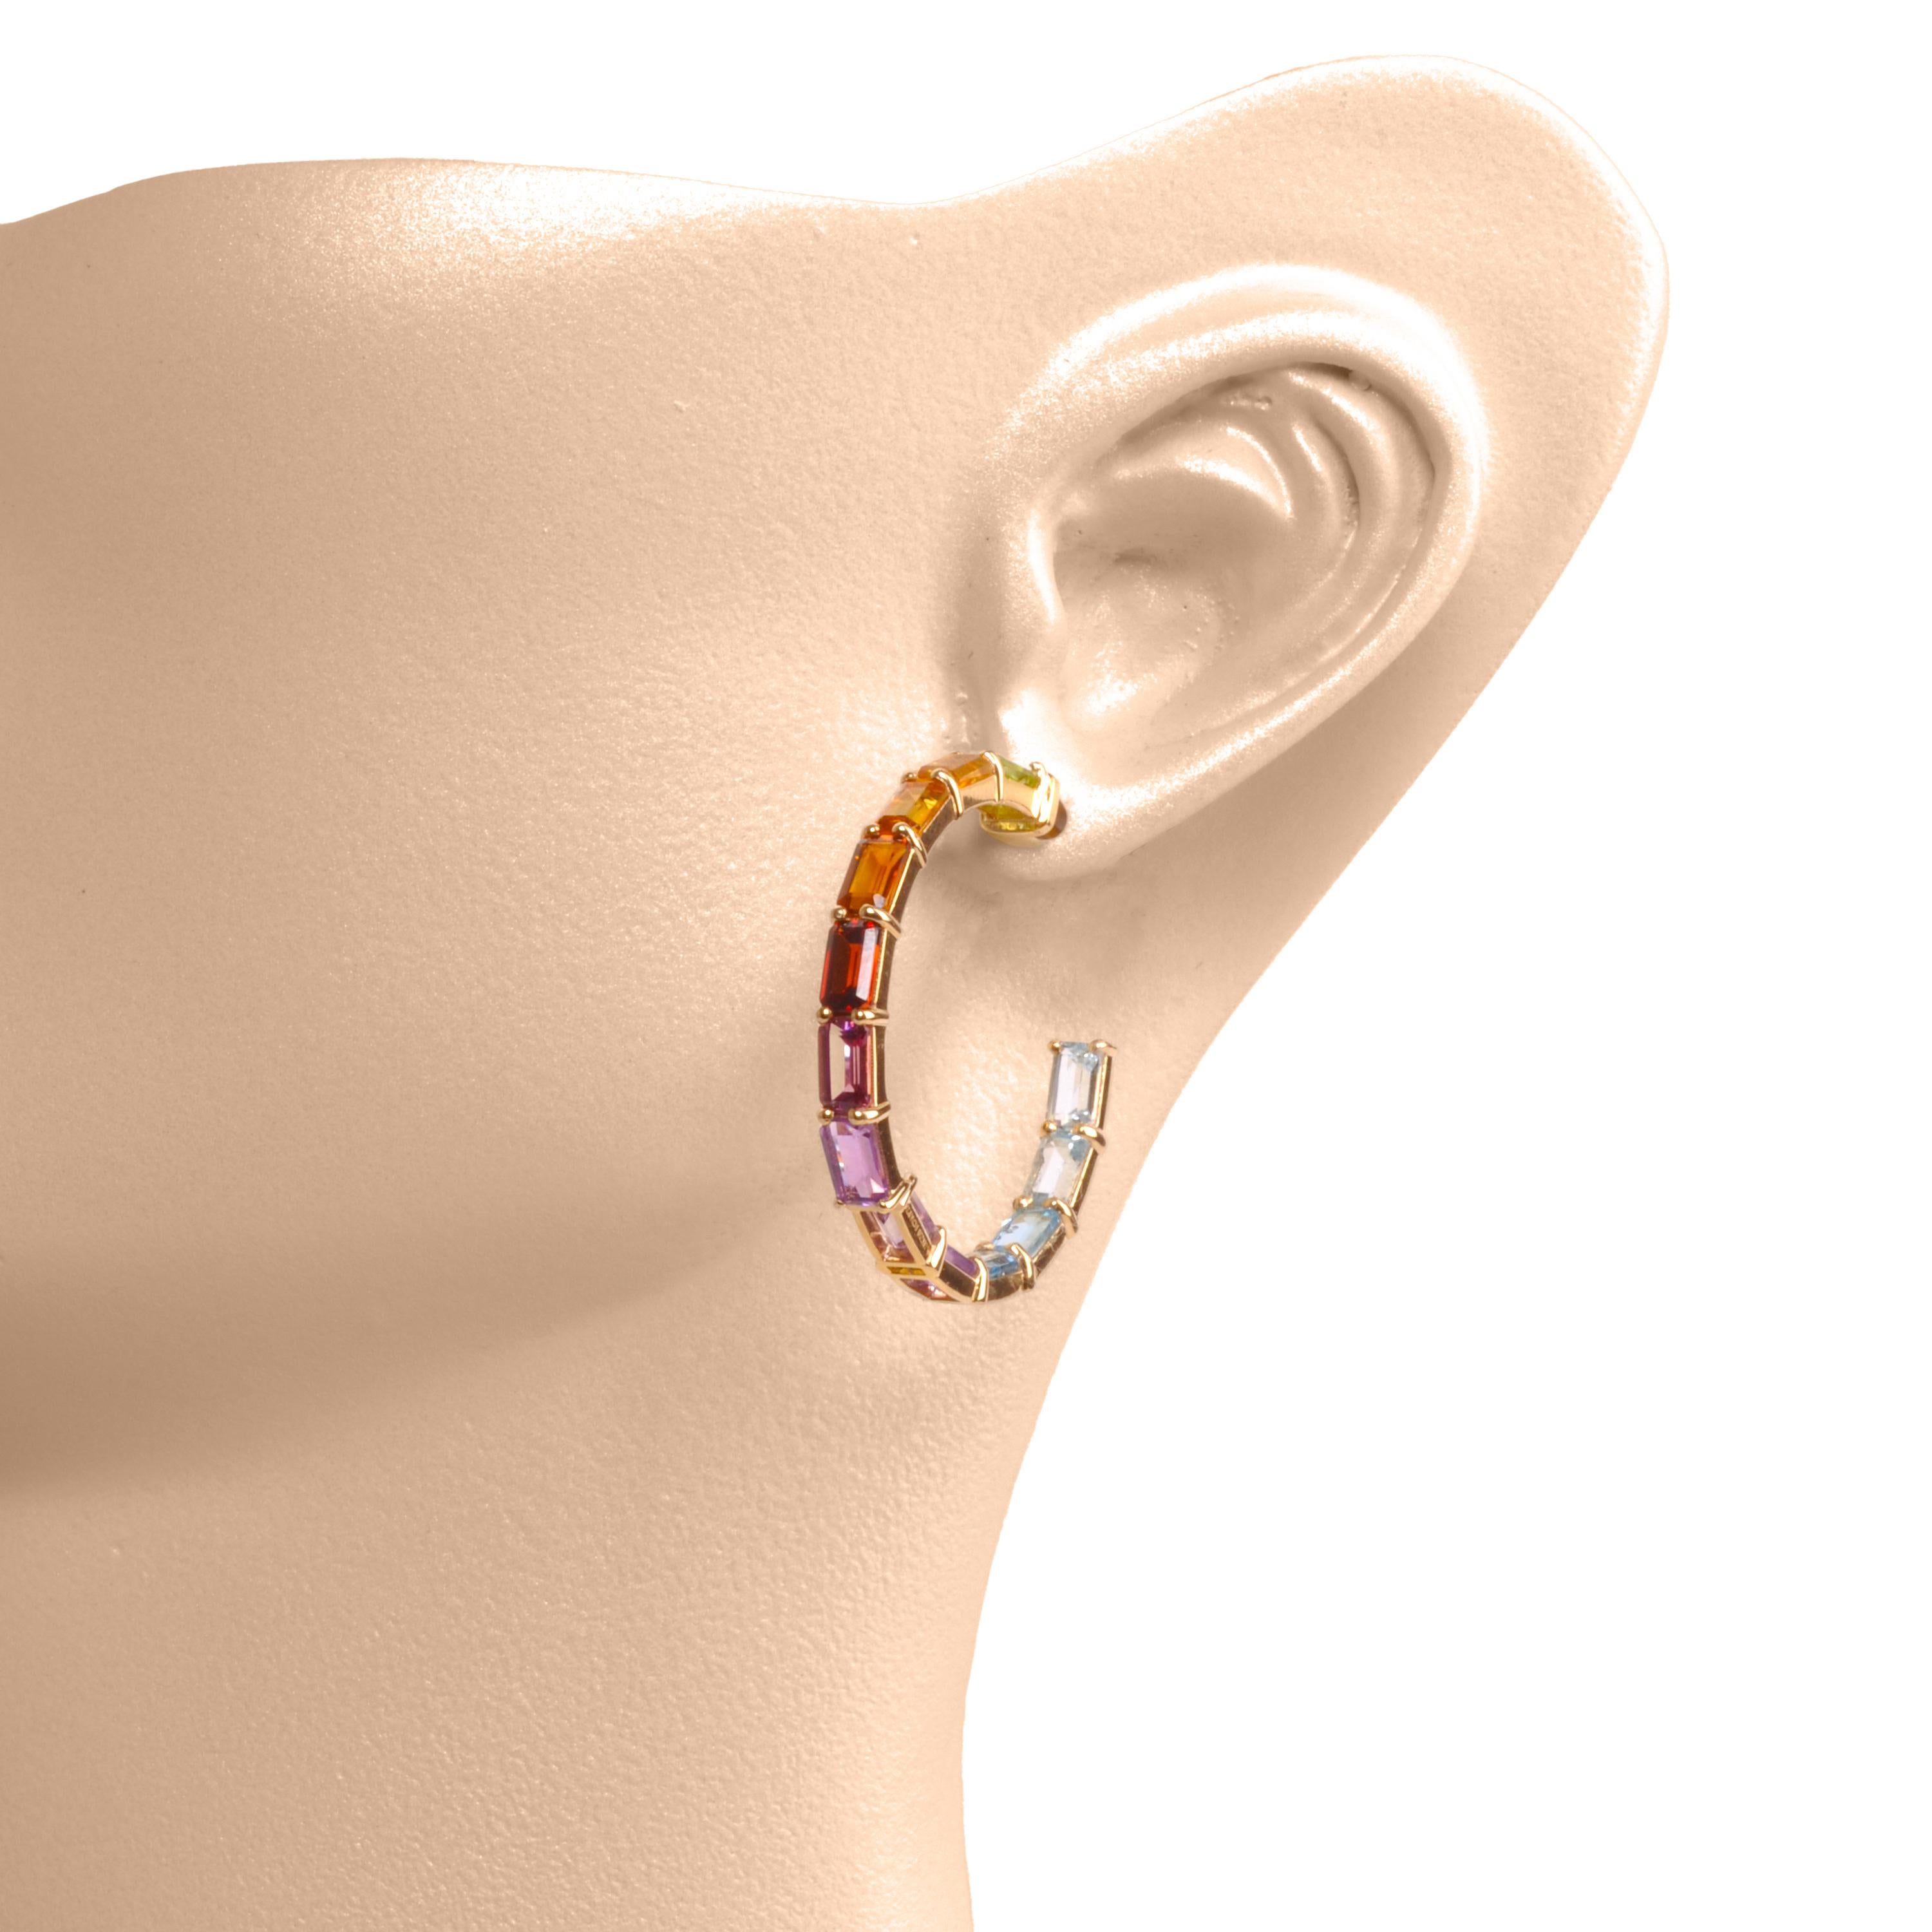 18 Karat Gold 5x3mm achteckige Regenbogen-Edelsteine in Zackenfassung.

Die Multi Rainbow Hoops Earrings versetzen Sie in eine Welt voller lebhaftem Charme und feiern das Kaleidoskop der Farben in der Natur. Diese exquisiten Ohrringe vereinen